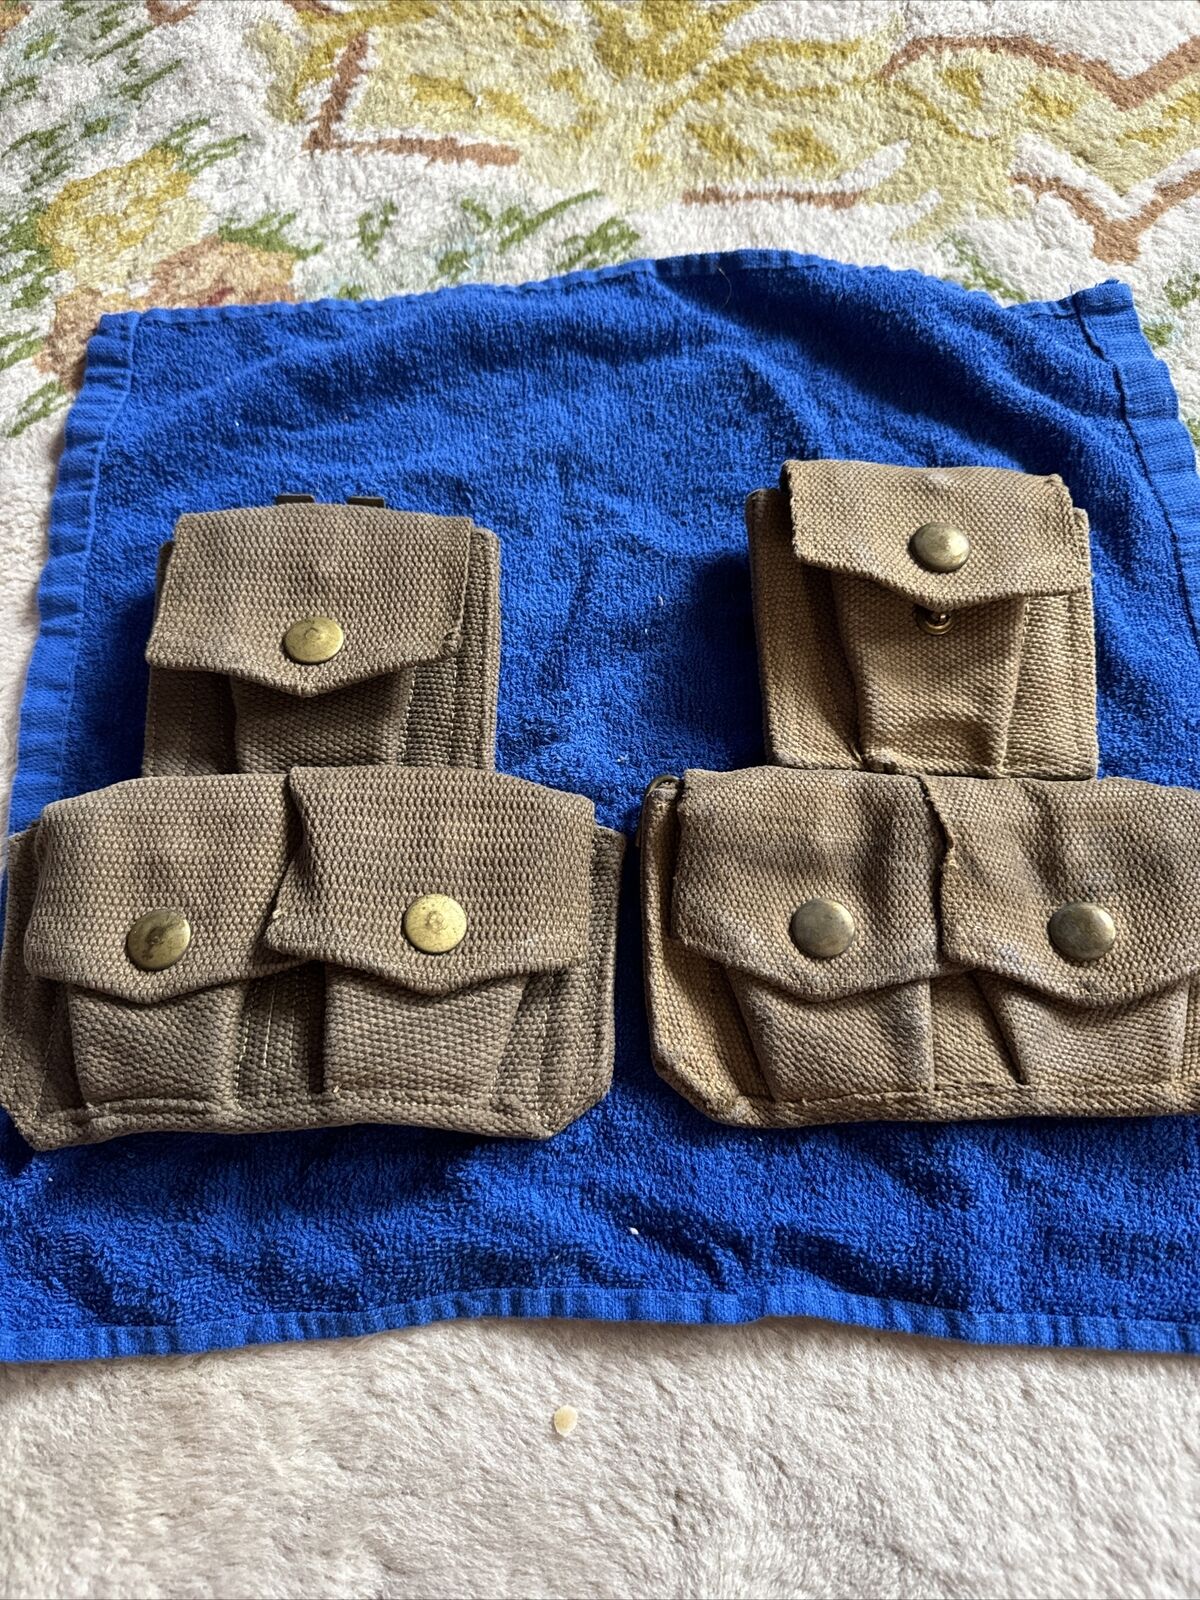 Qty (2) Tan cotton canvas web 3 cell belt pouch w suspender buckle each